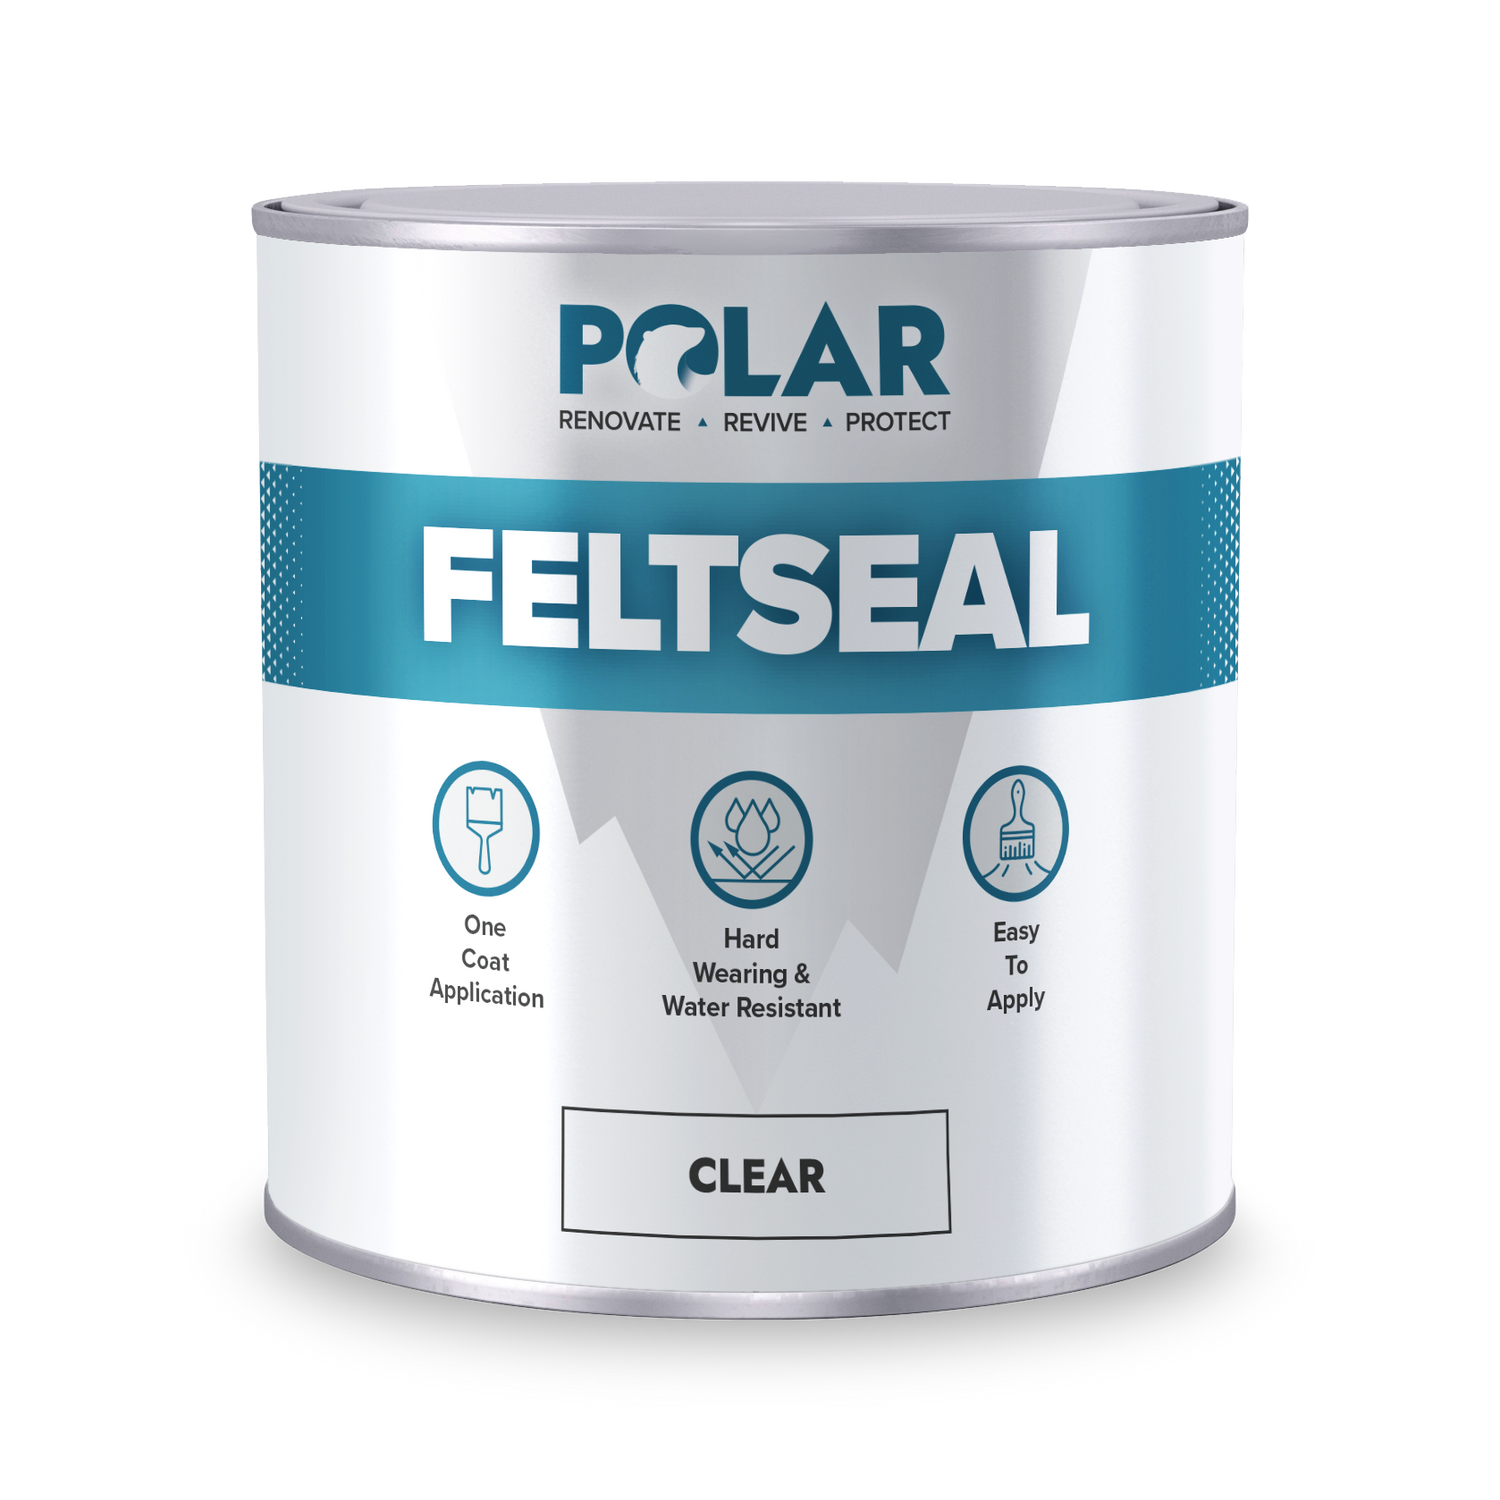 polar felt seal